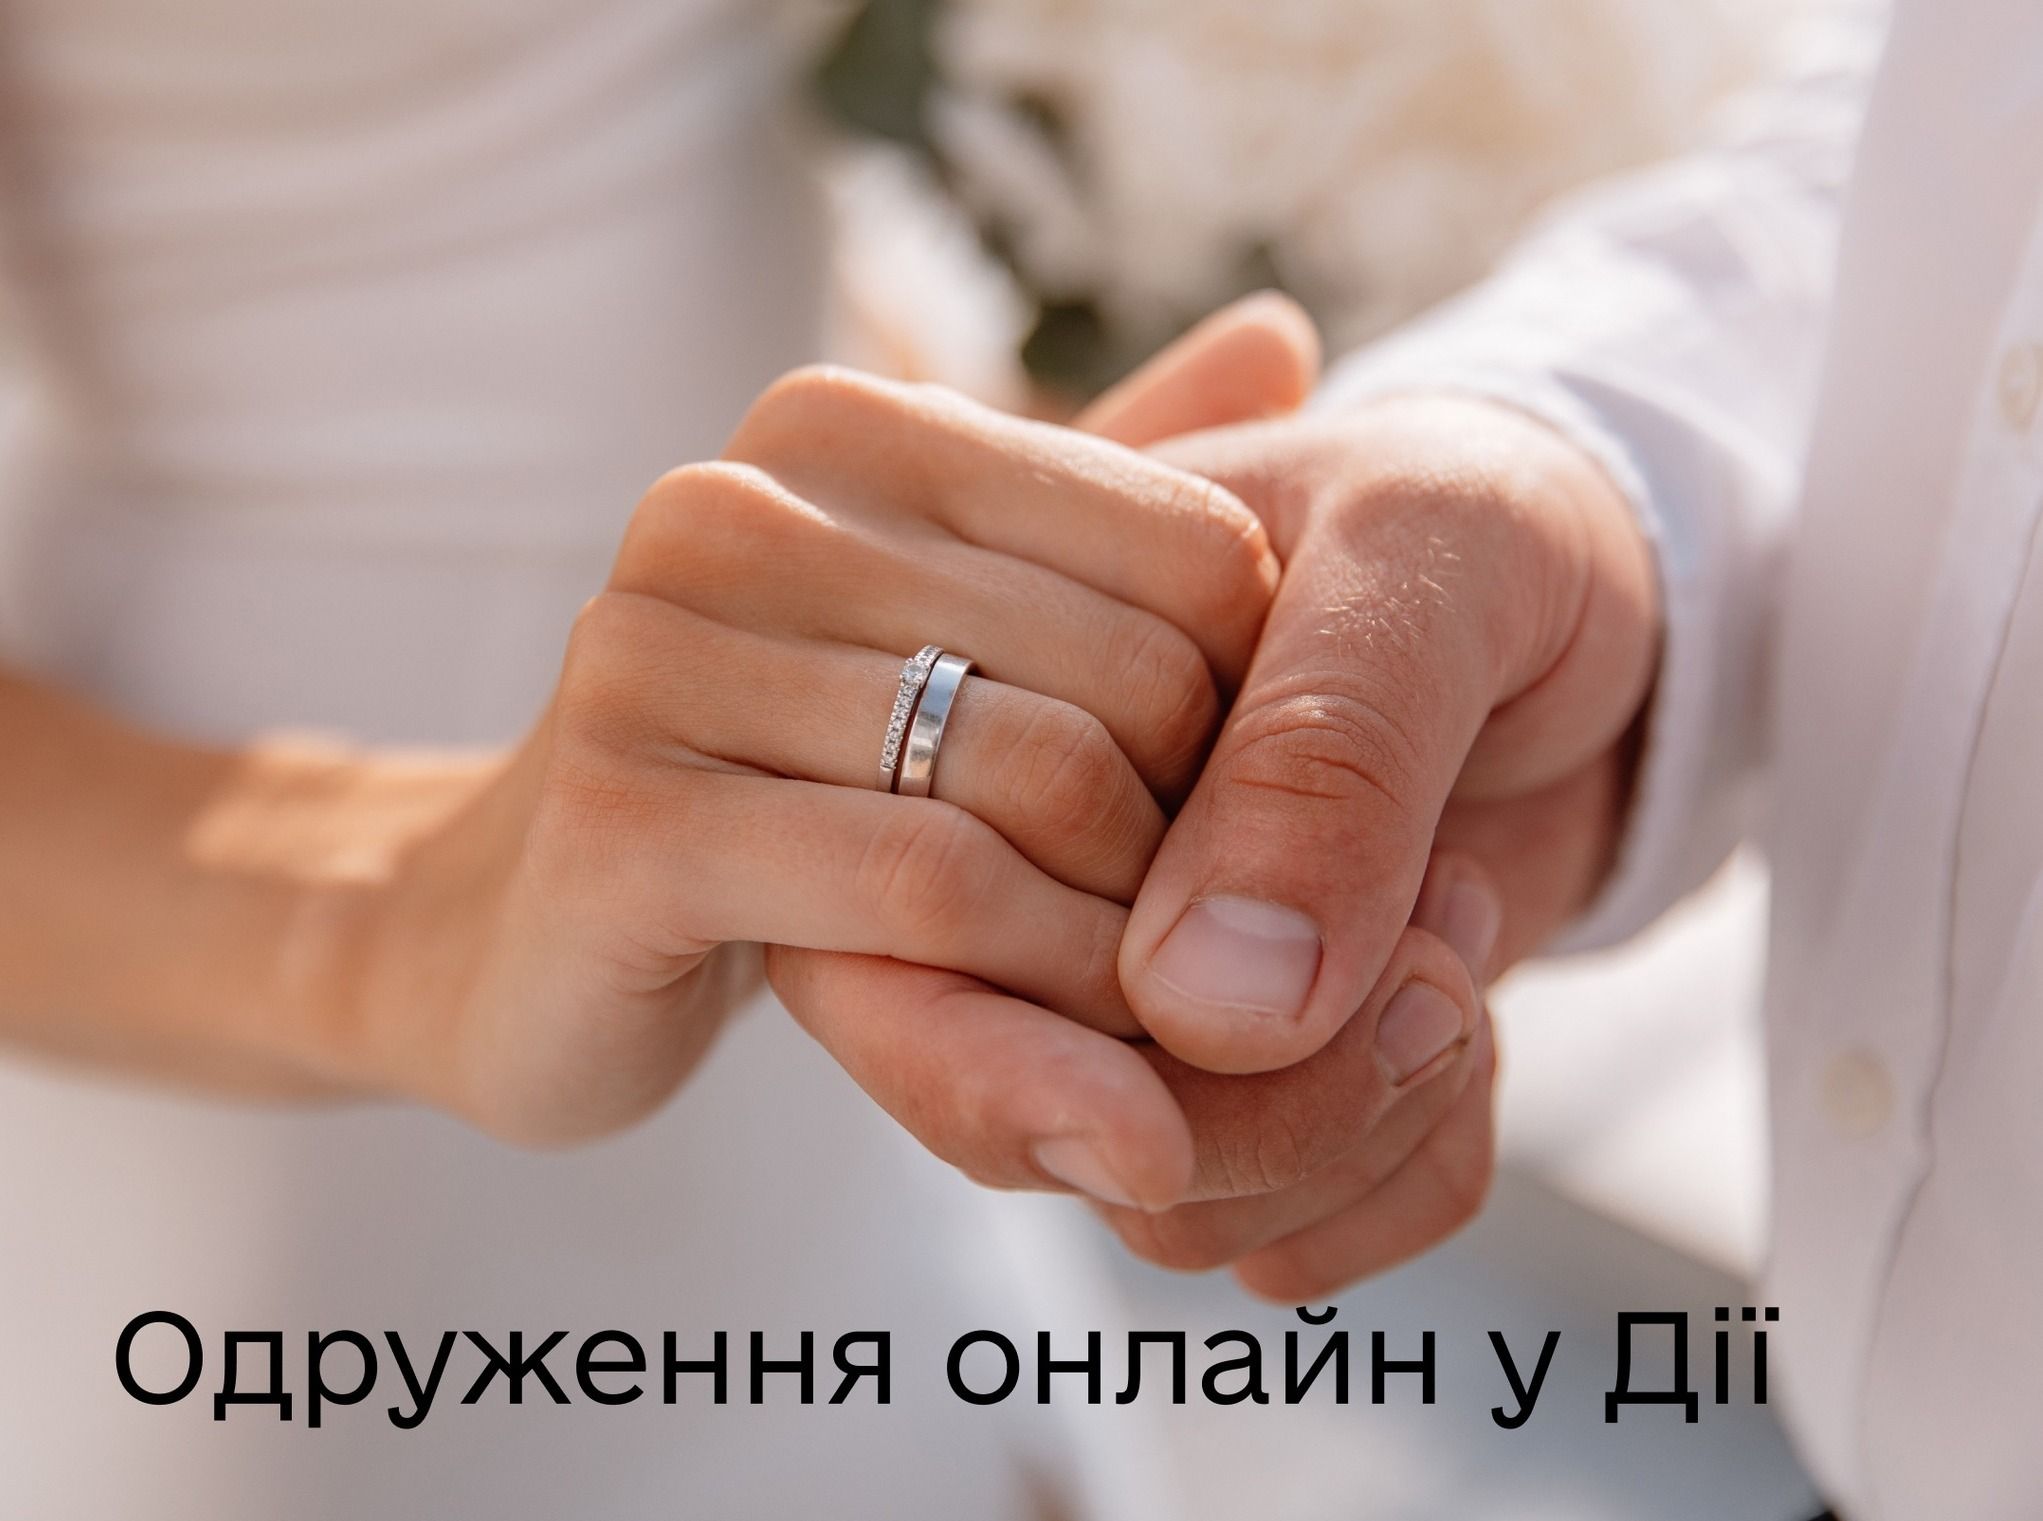 Українці матимуть можливість одружуватися безпосередньо в застосунку.